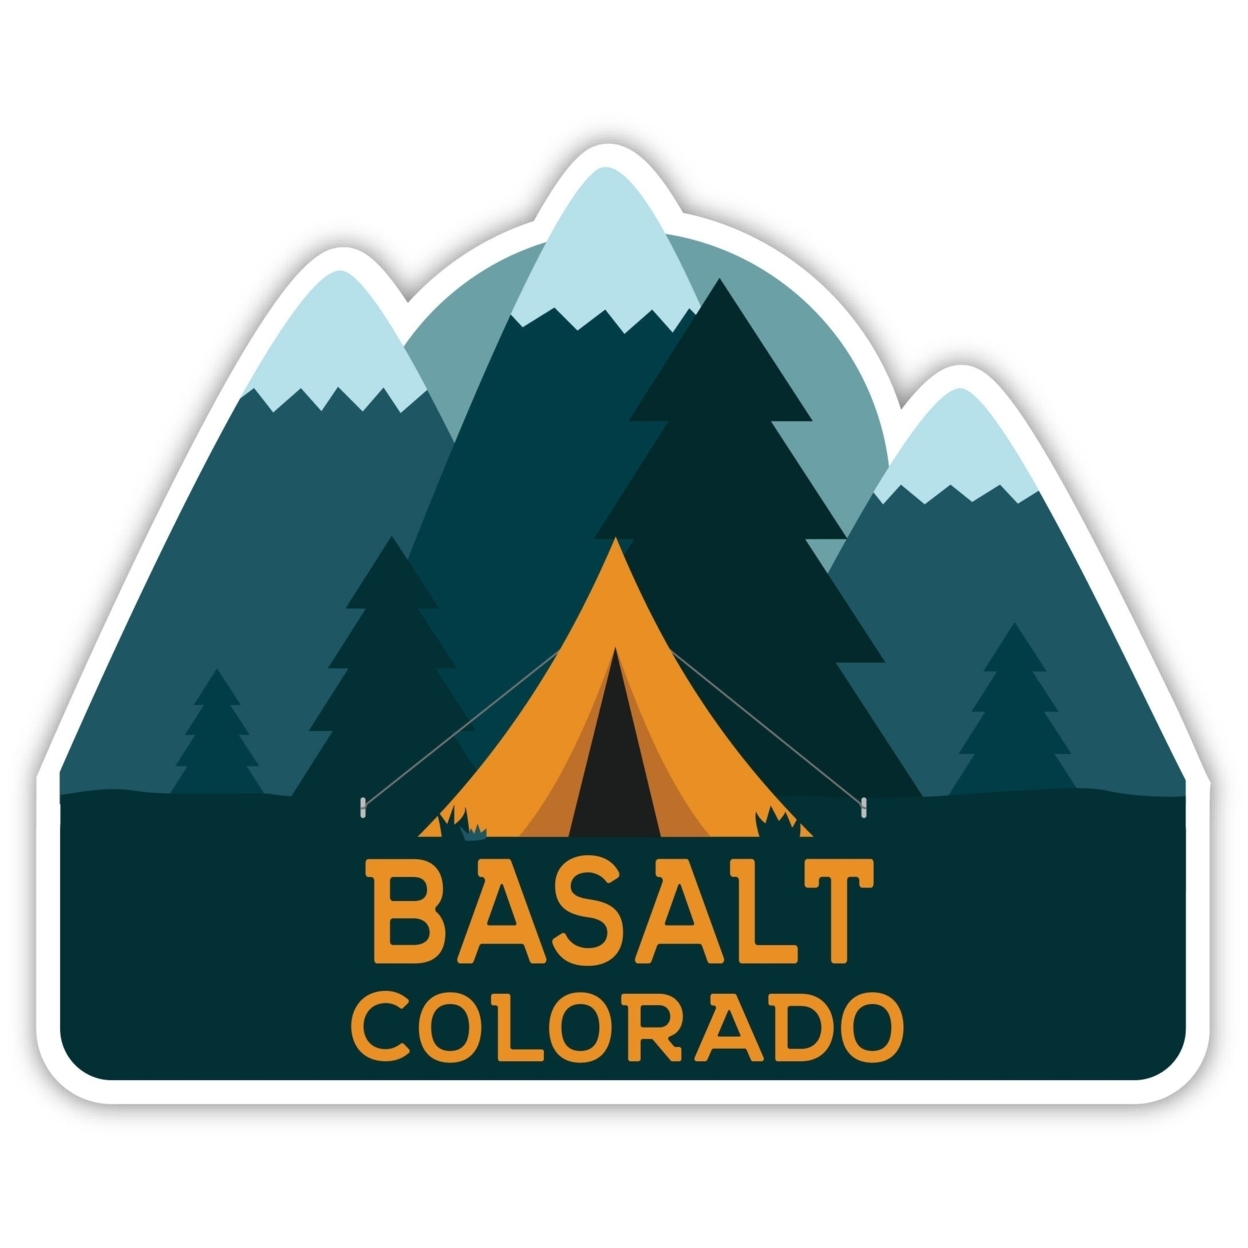 Basalt Colorado Souvenir Decorative Stickers (Choose Theme And Size) - Single Unit, 2-Inch, Tent